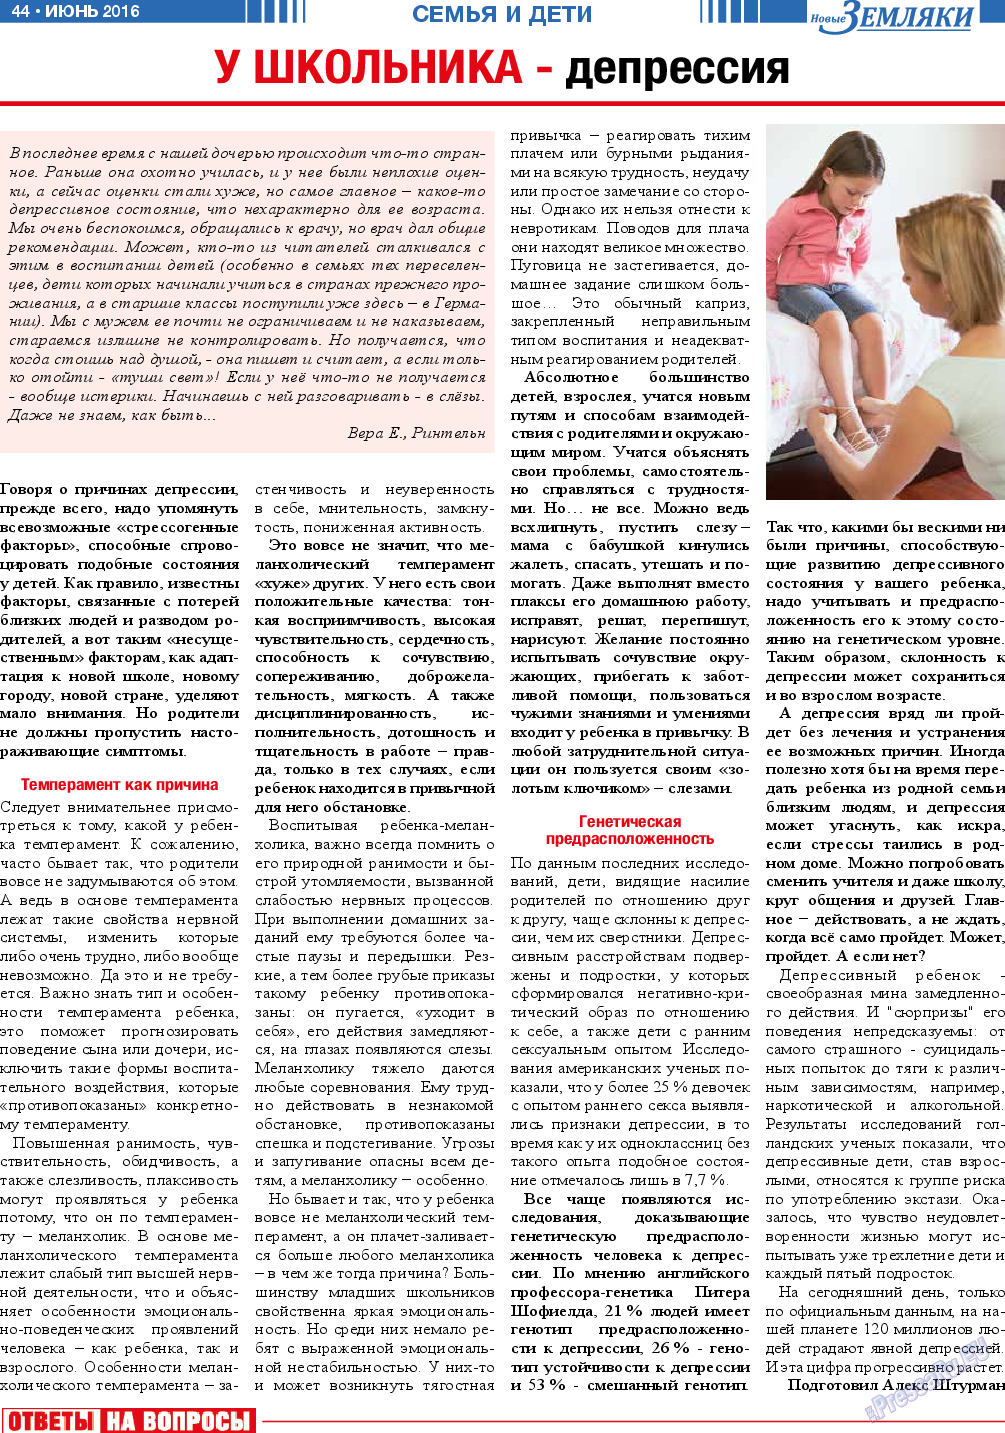 Новые Земляки, газета. 2016 №6 стр.44